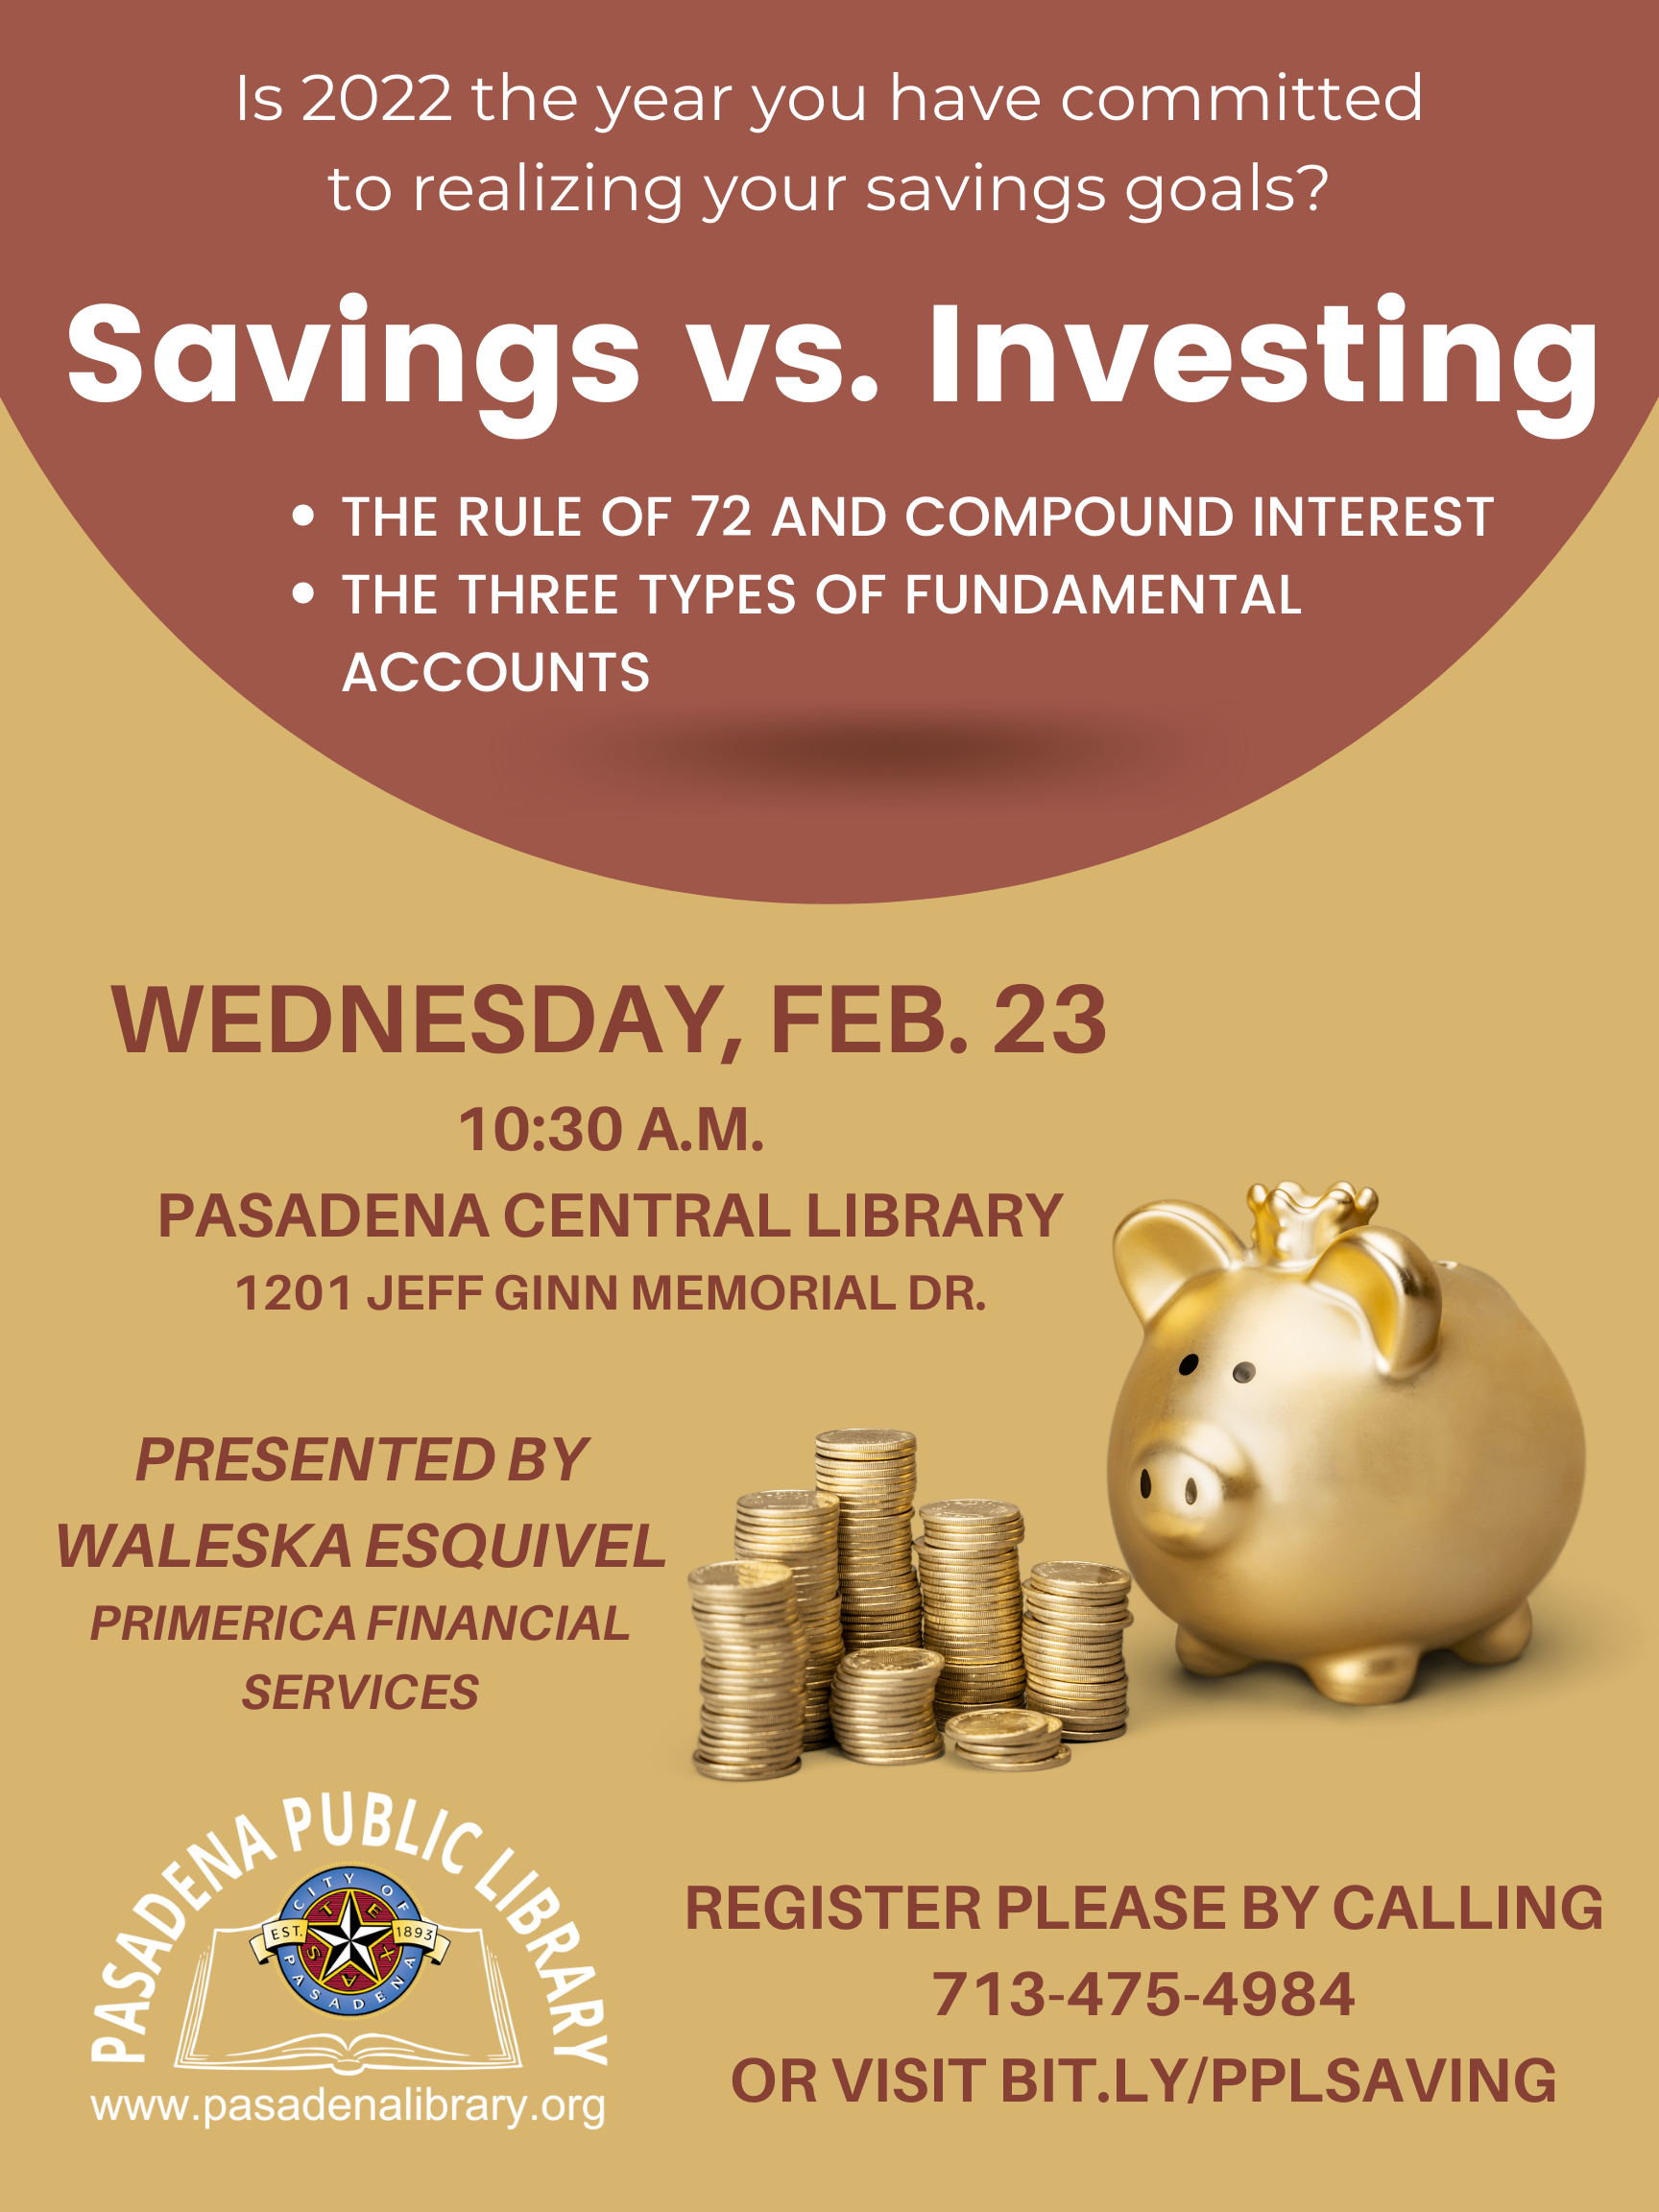 Flyer for savings vs. investing program on Wednesday, February 23